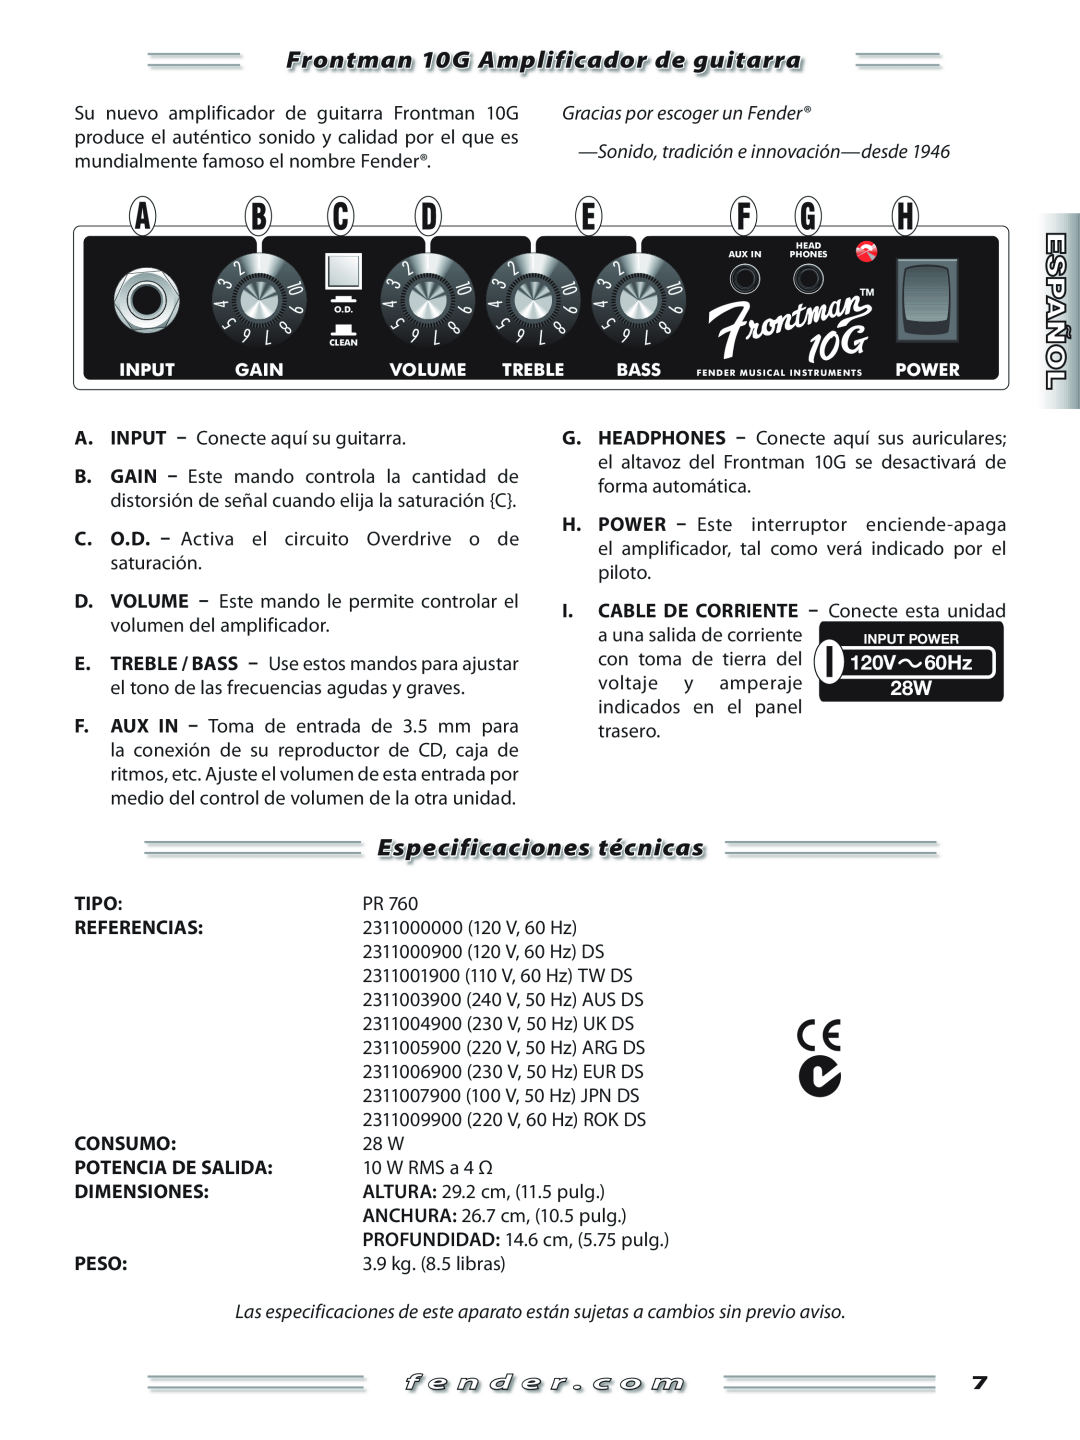 Fender Frontman 10G Amplificador de guitarra, Especificaciones técnicas, Su nuevo amplificador de guitarra Frontman 10G 